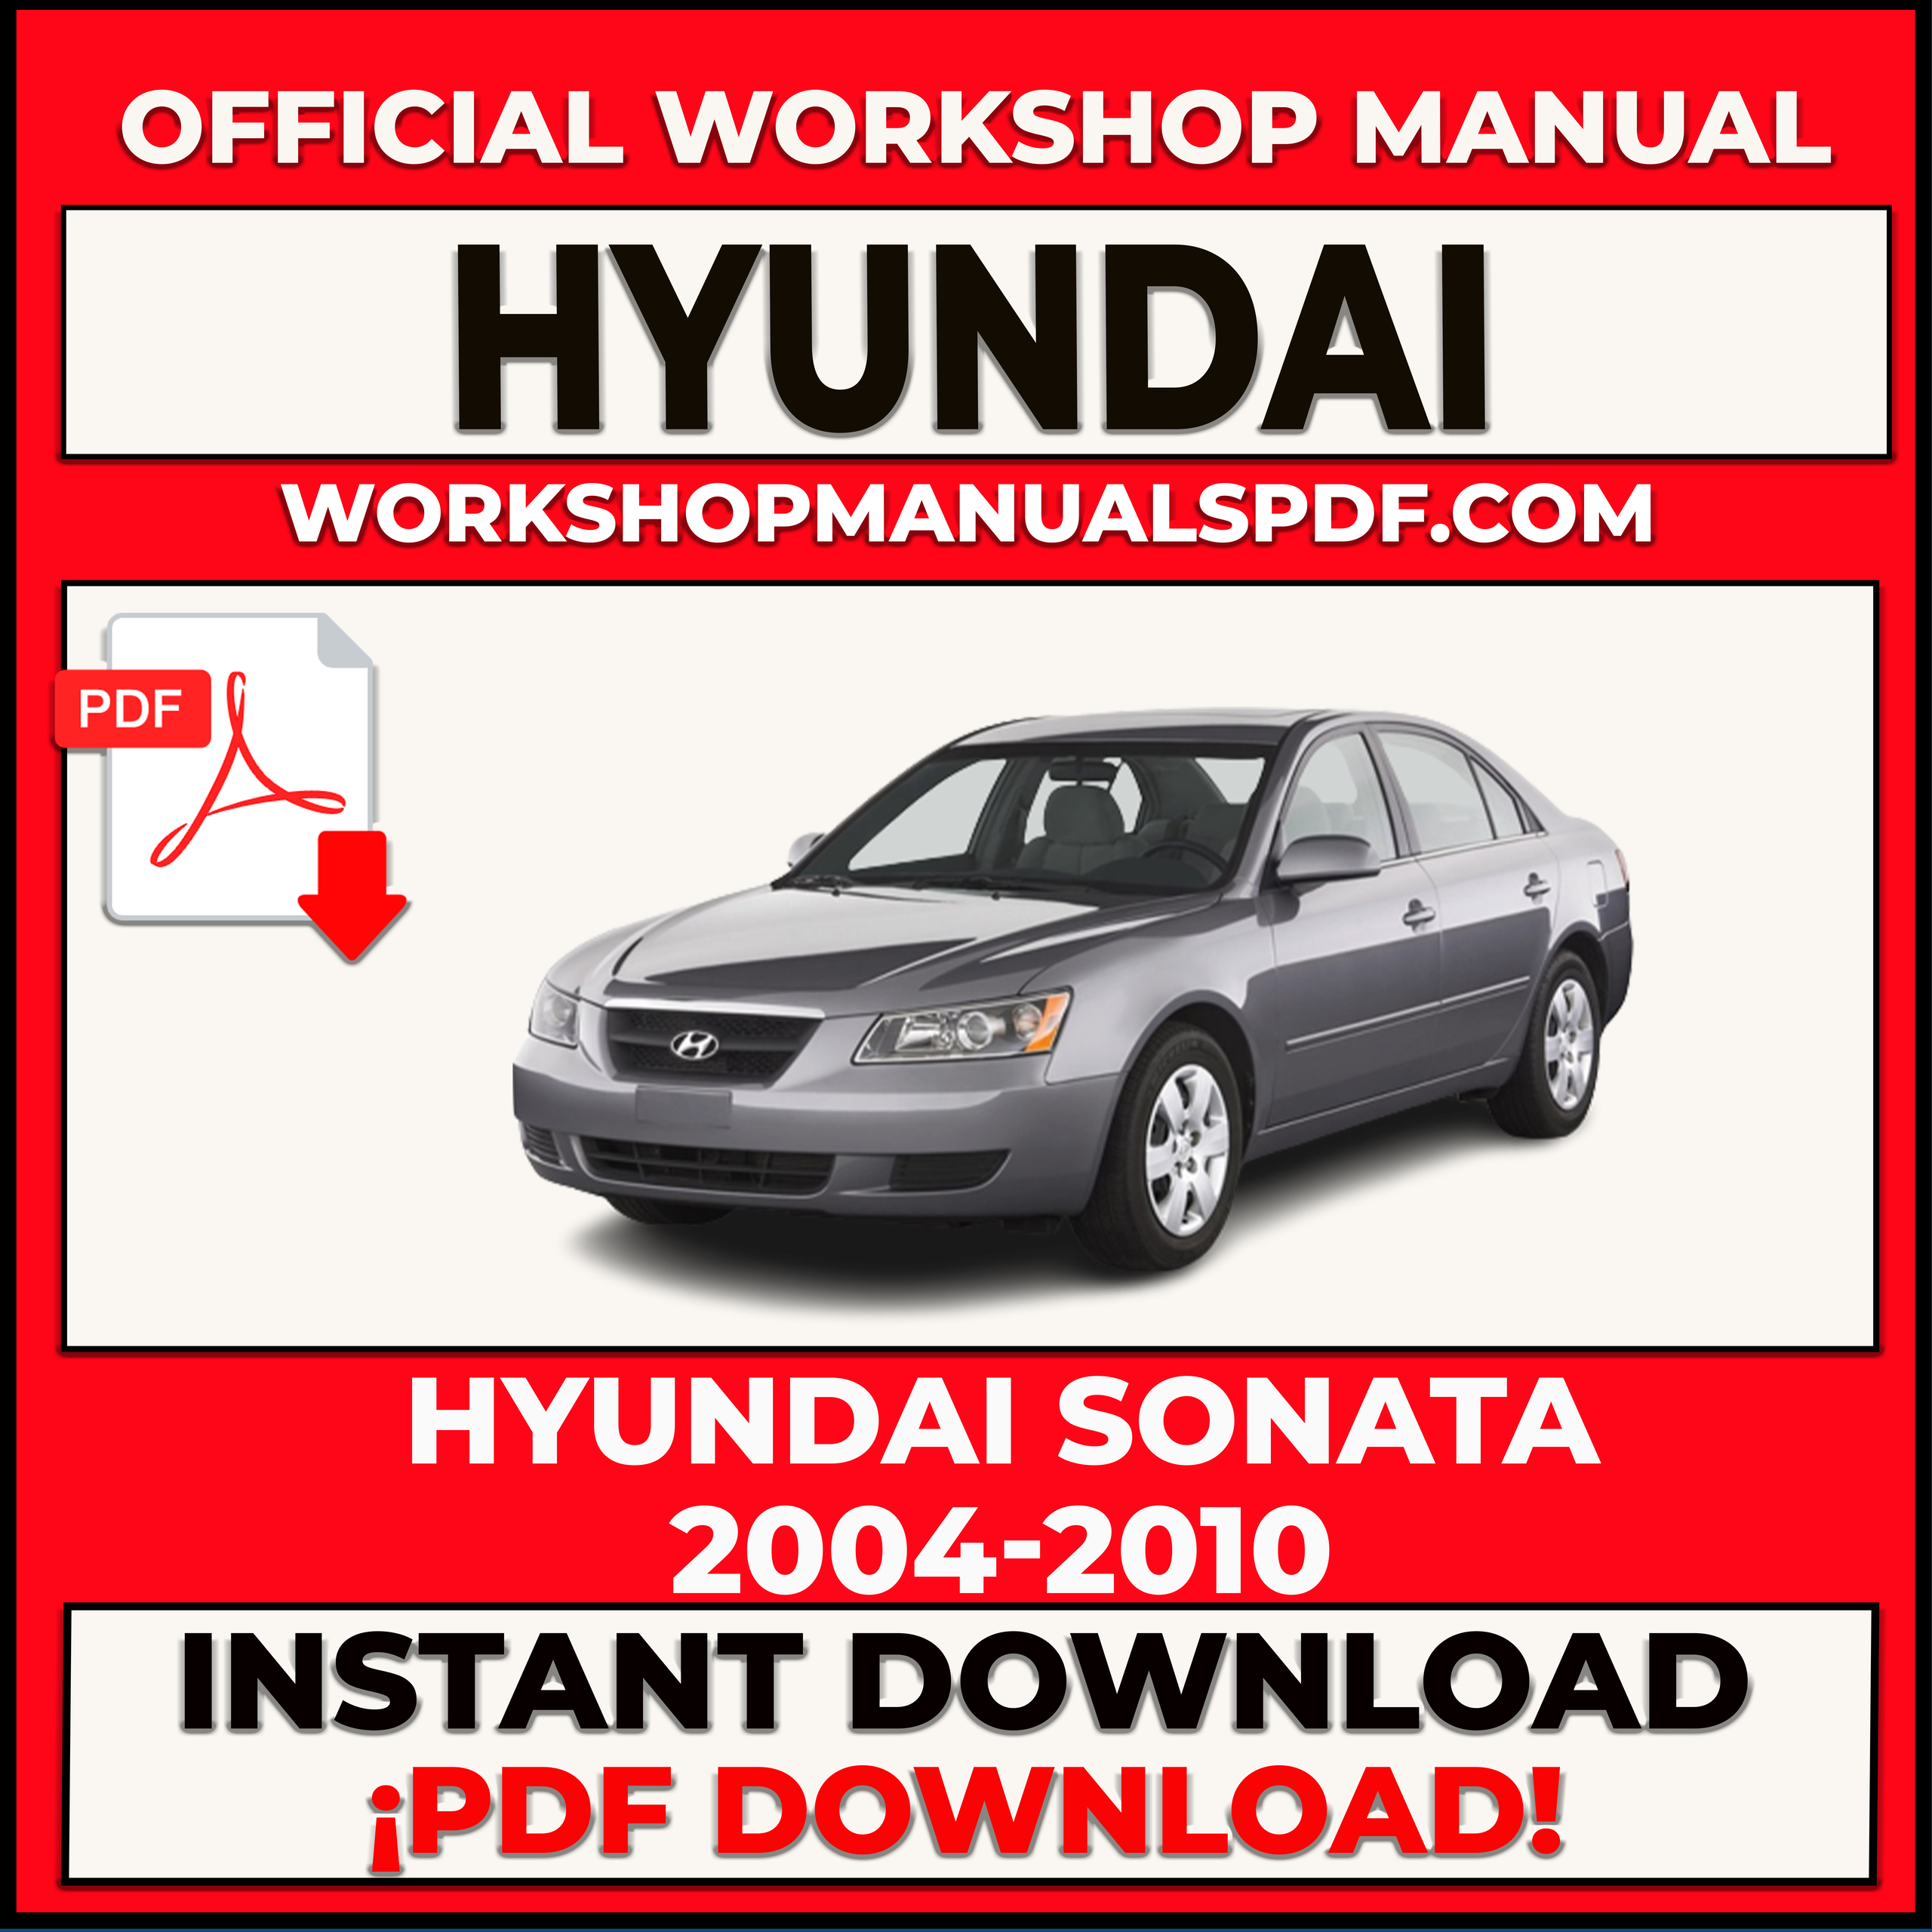 Hyundai Sonata 2004-2010 Workshop Repair Manual